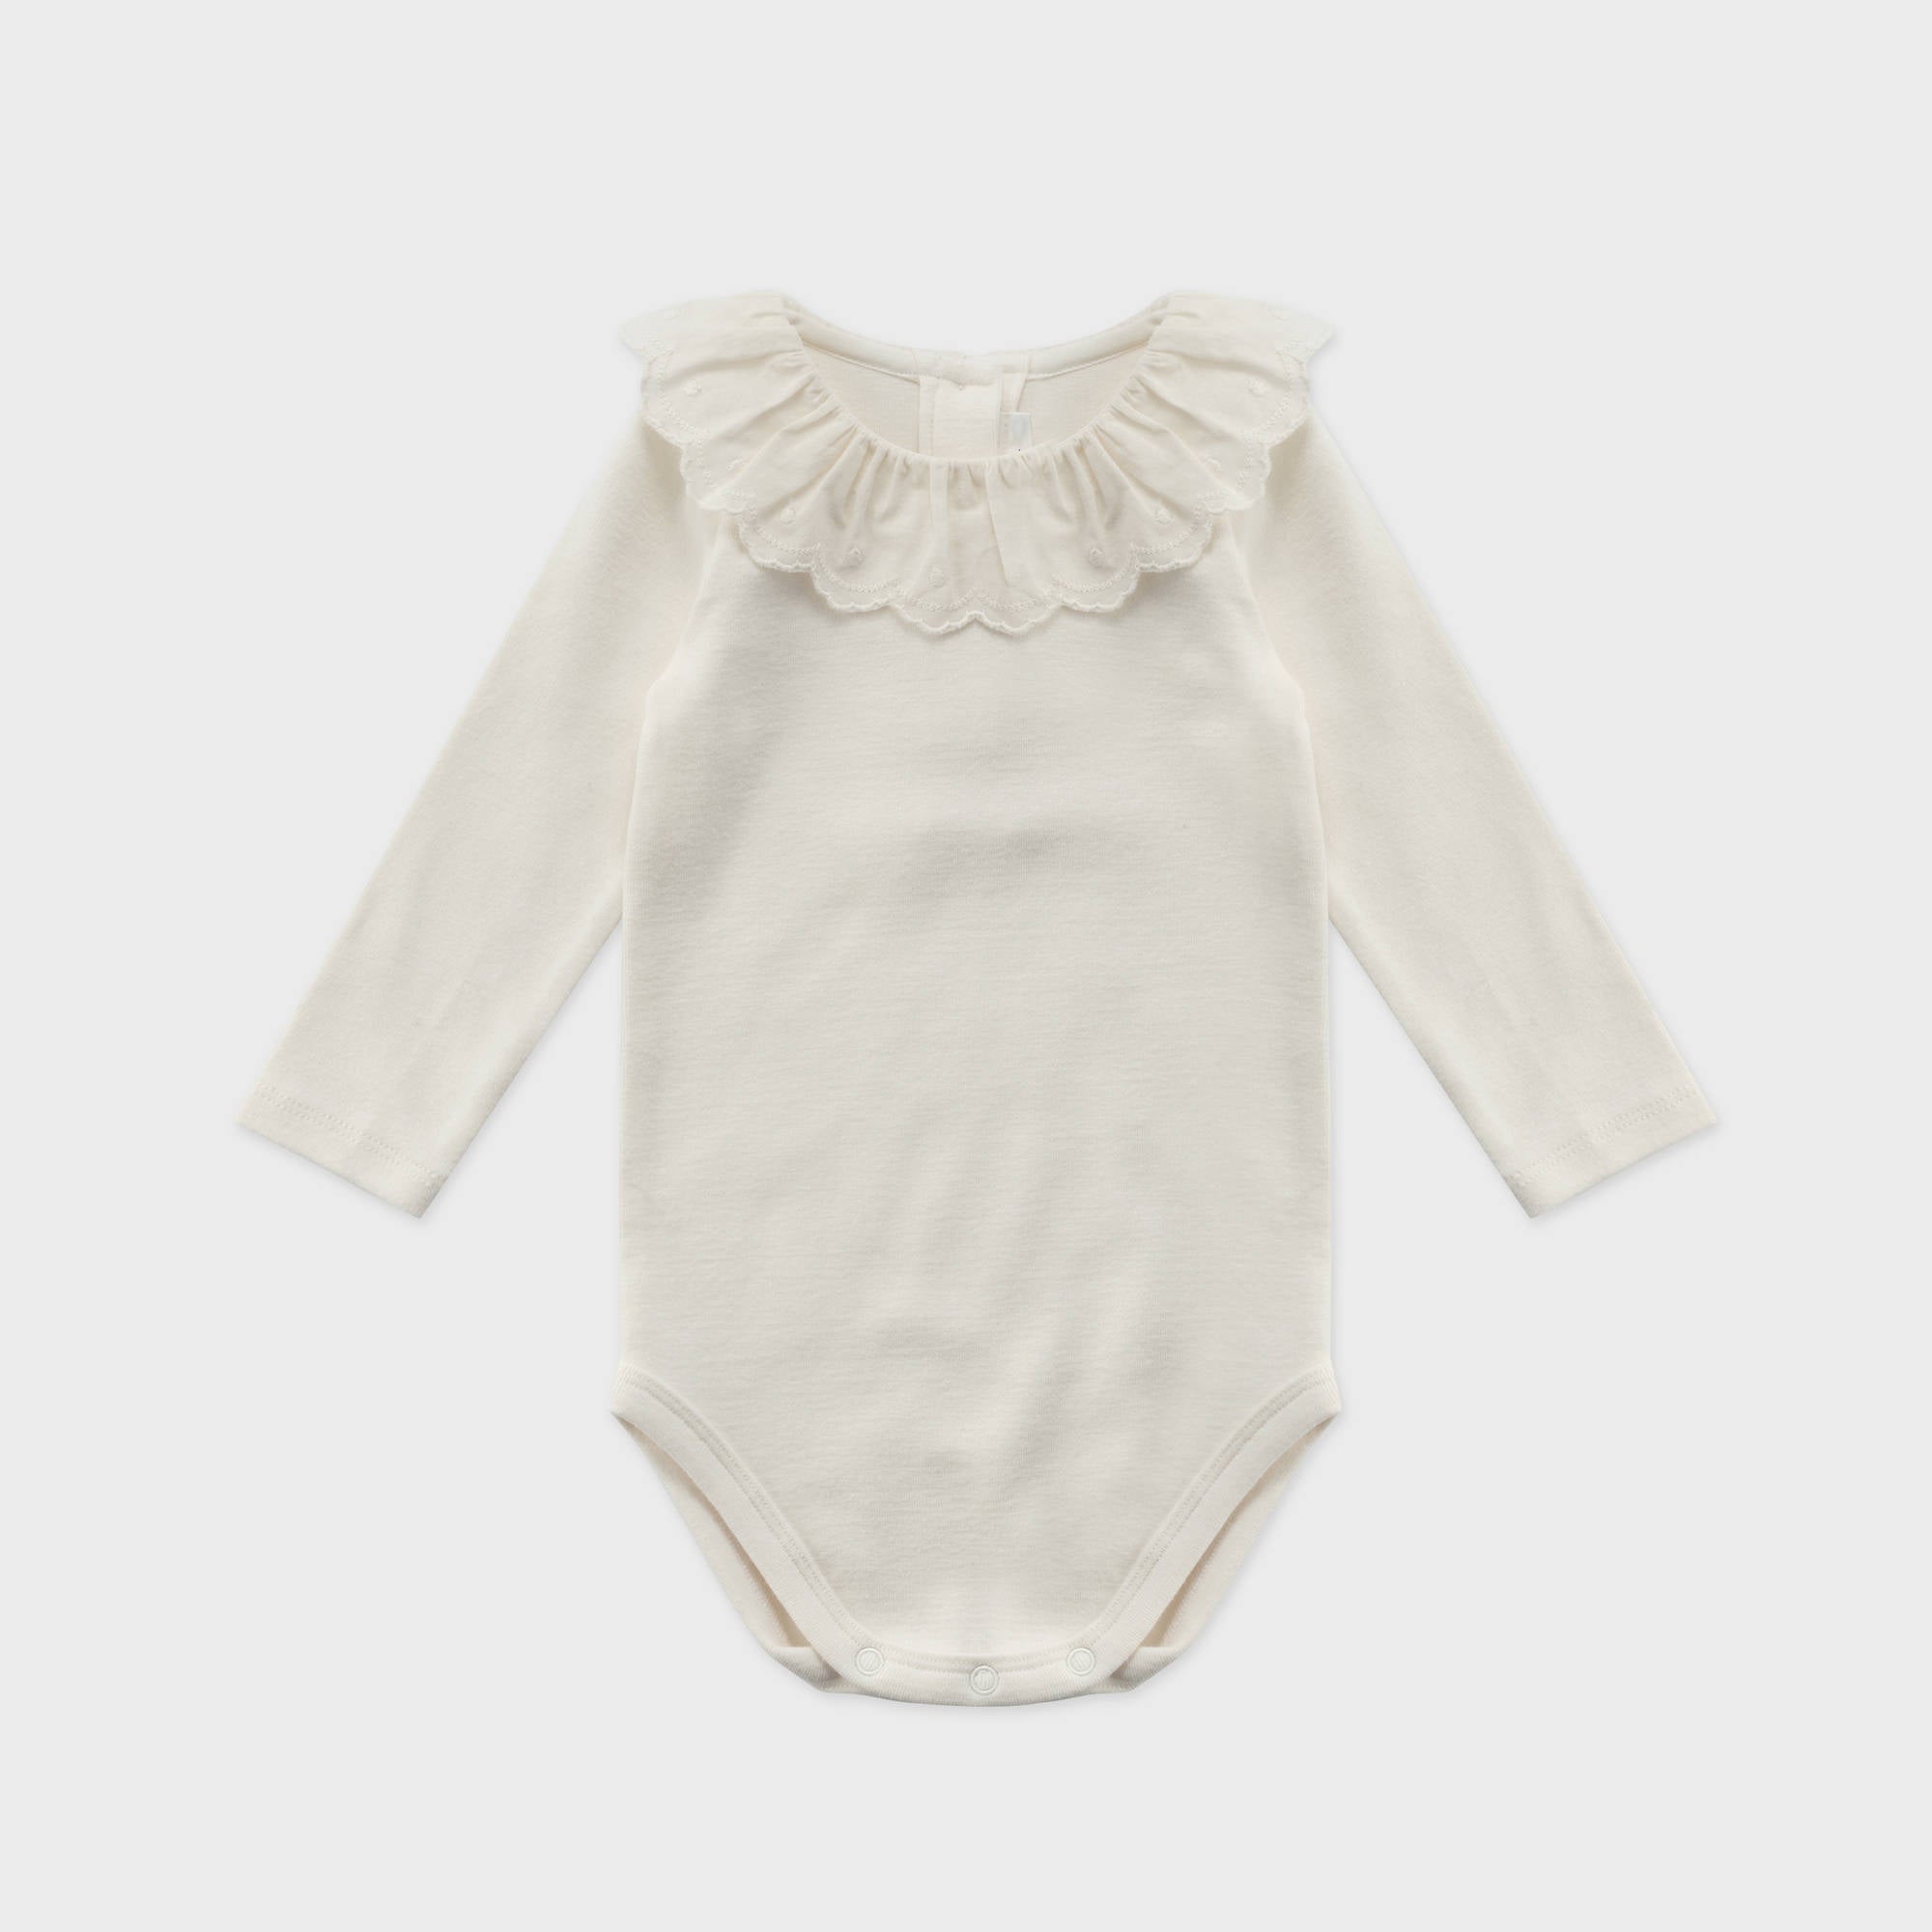 Baby Girls White Ruffled Cotton Babysuit